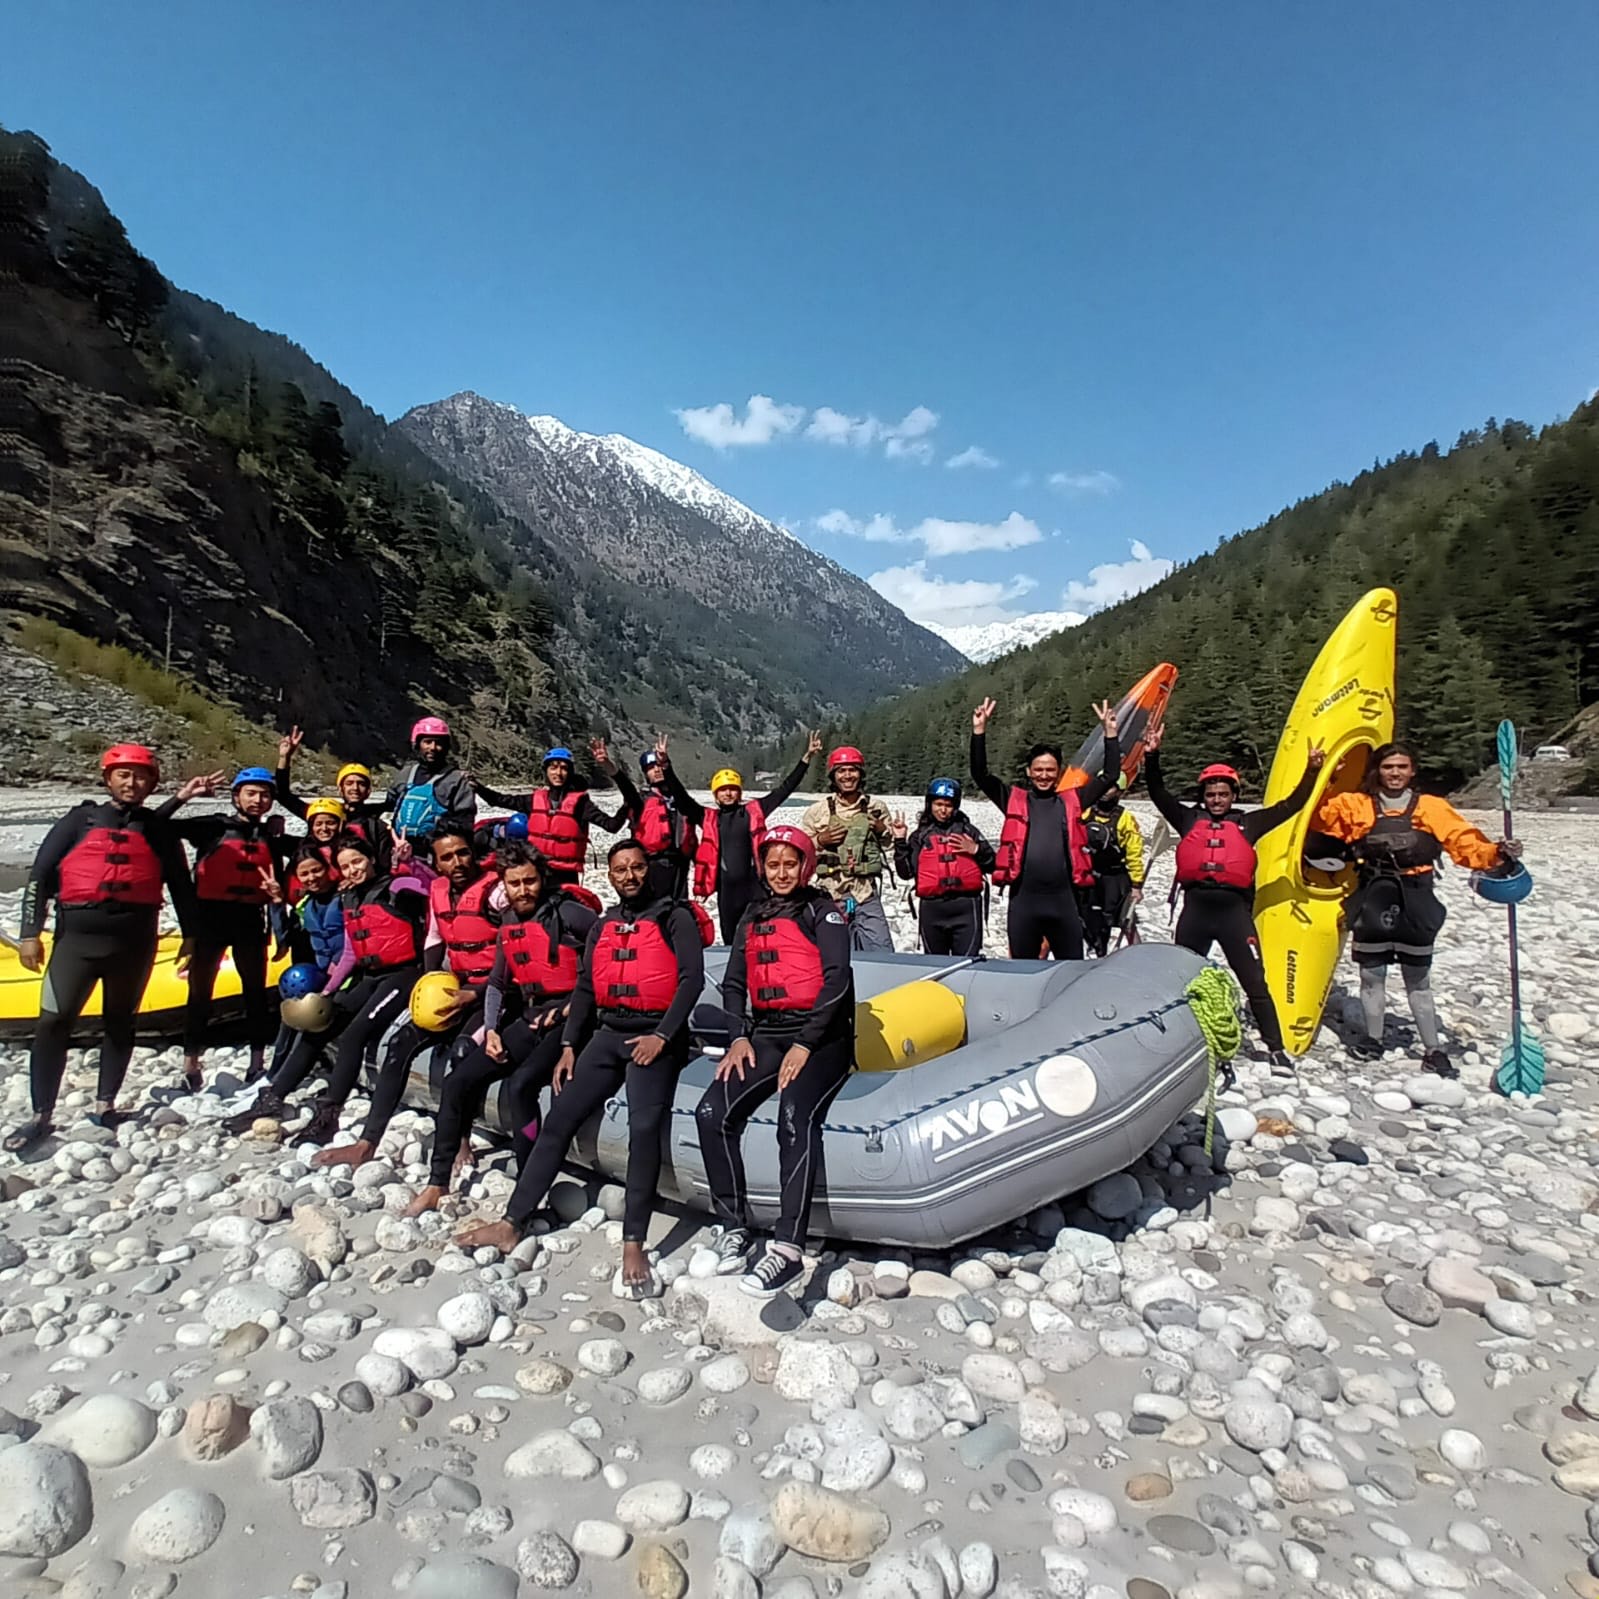 Uttarakhand opens white water rafting on Bhagirathi River in Harsil Valley